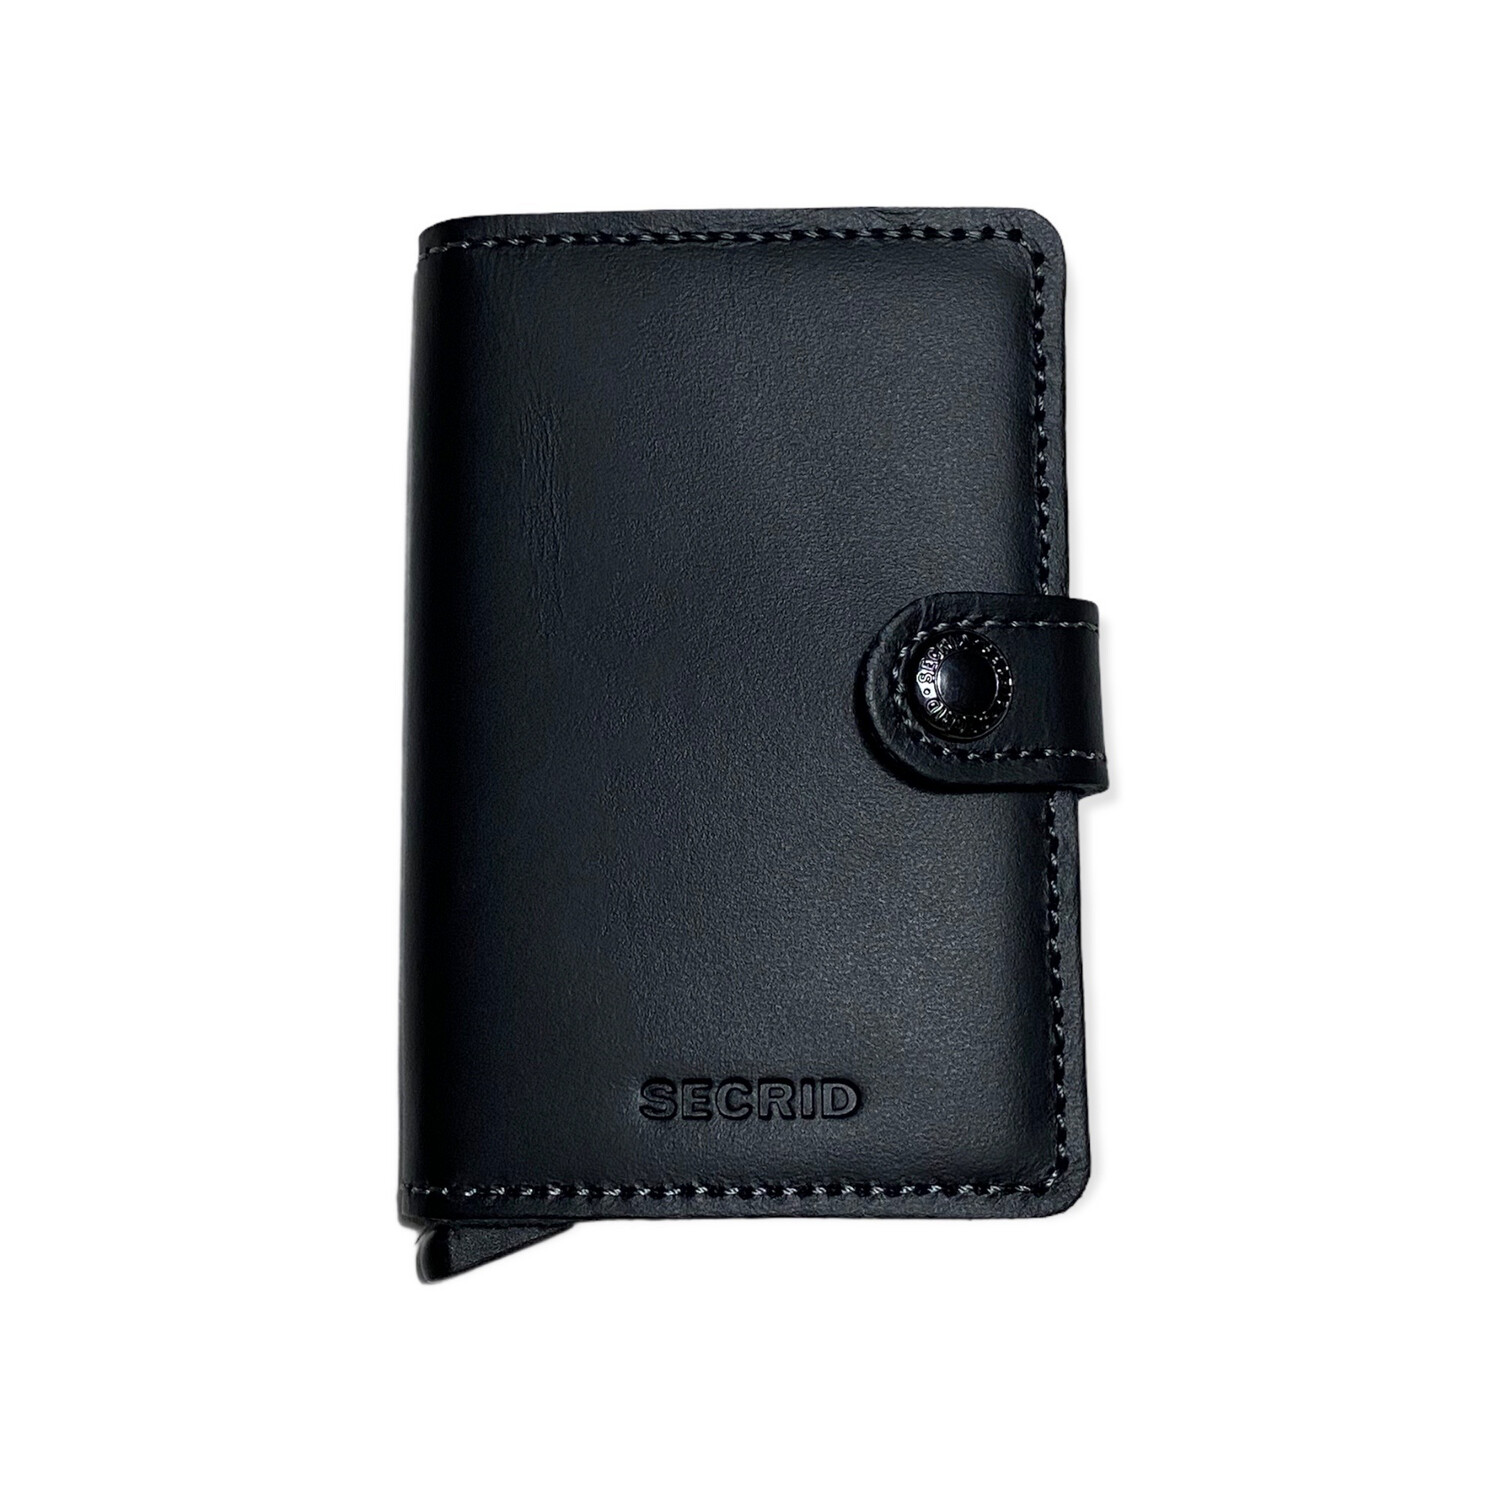 Secrid plånbok, svart